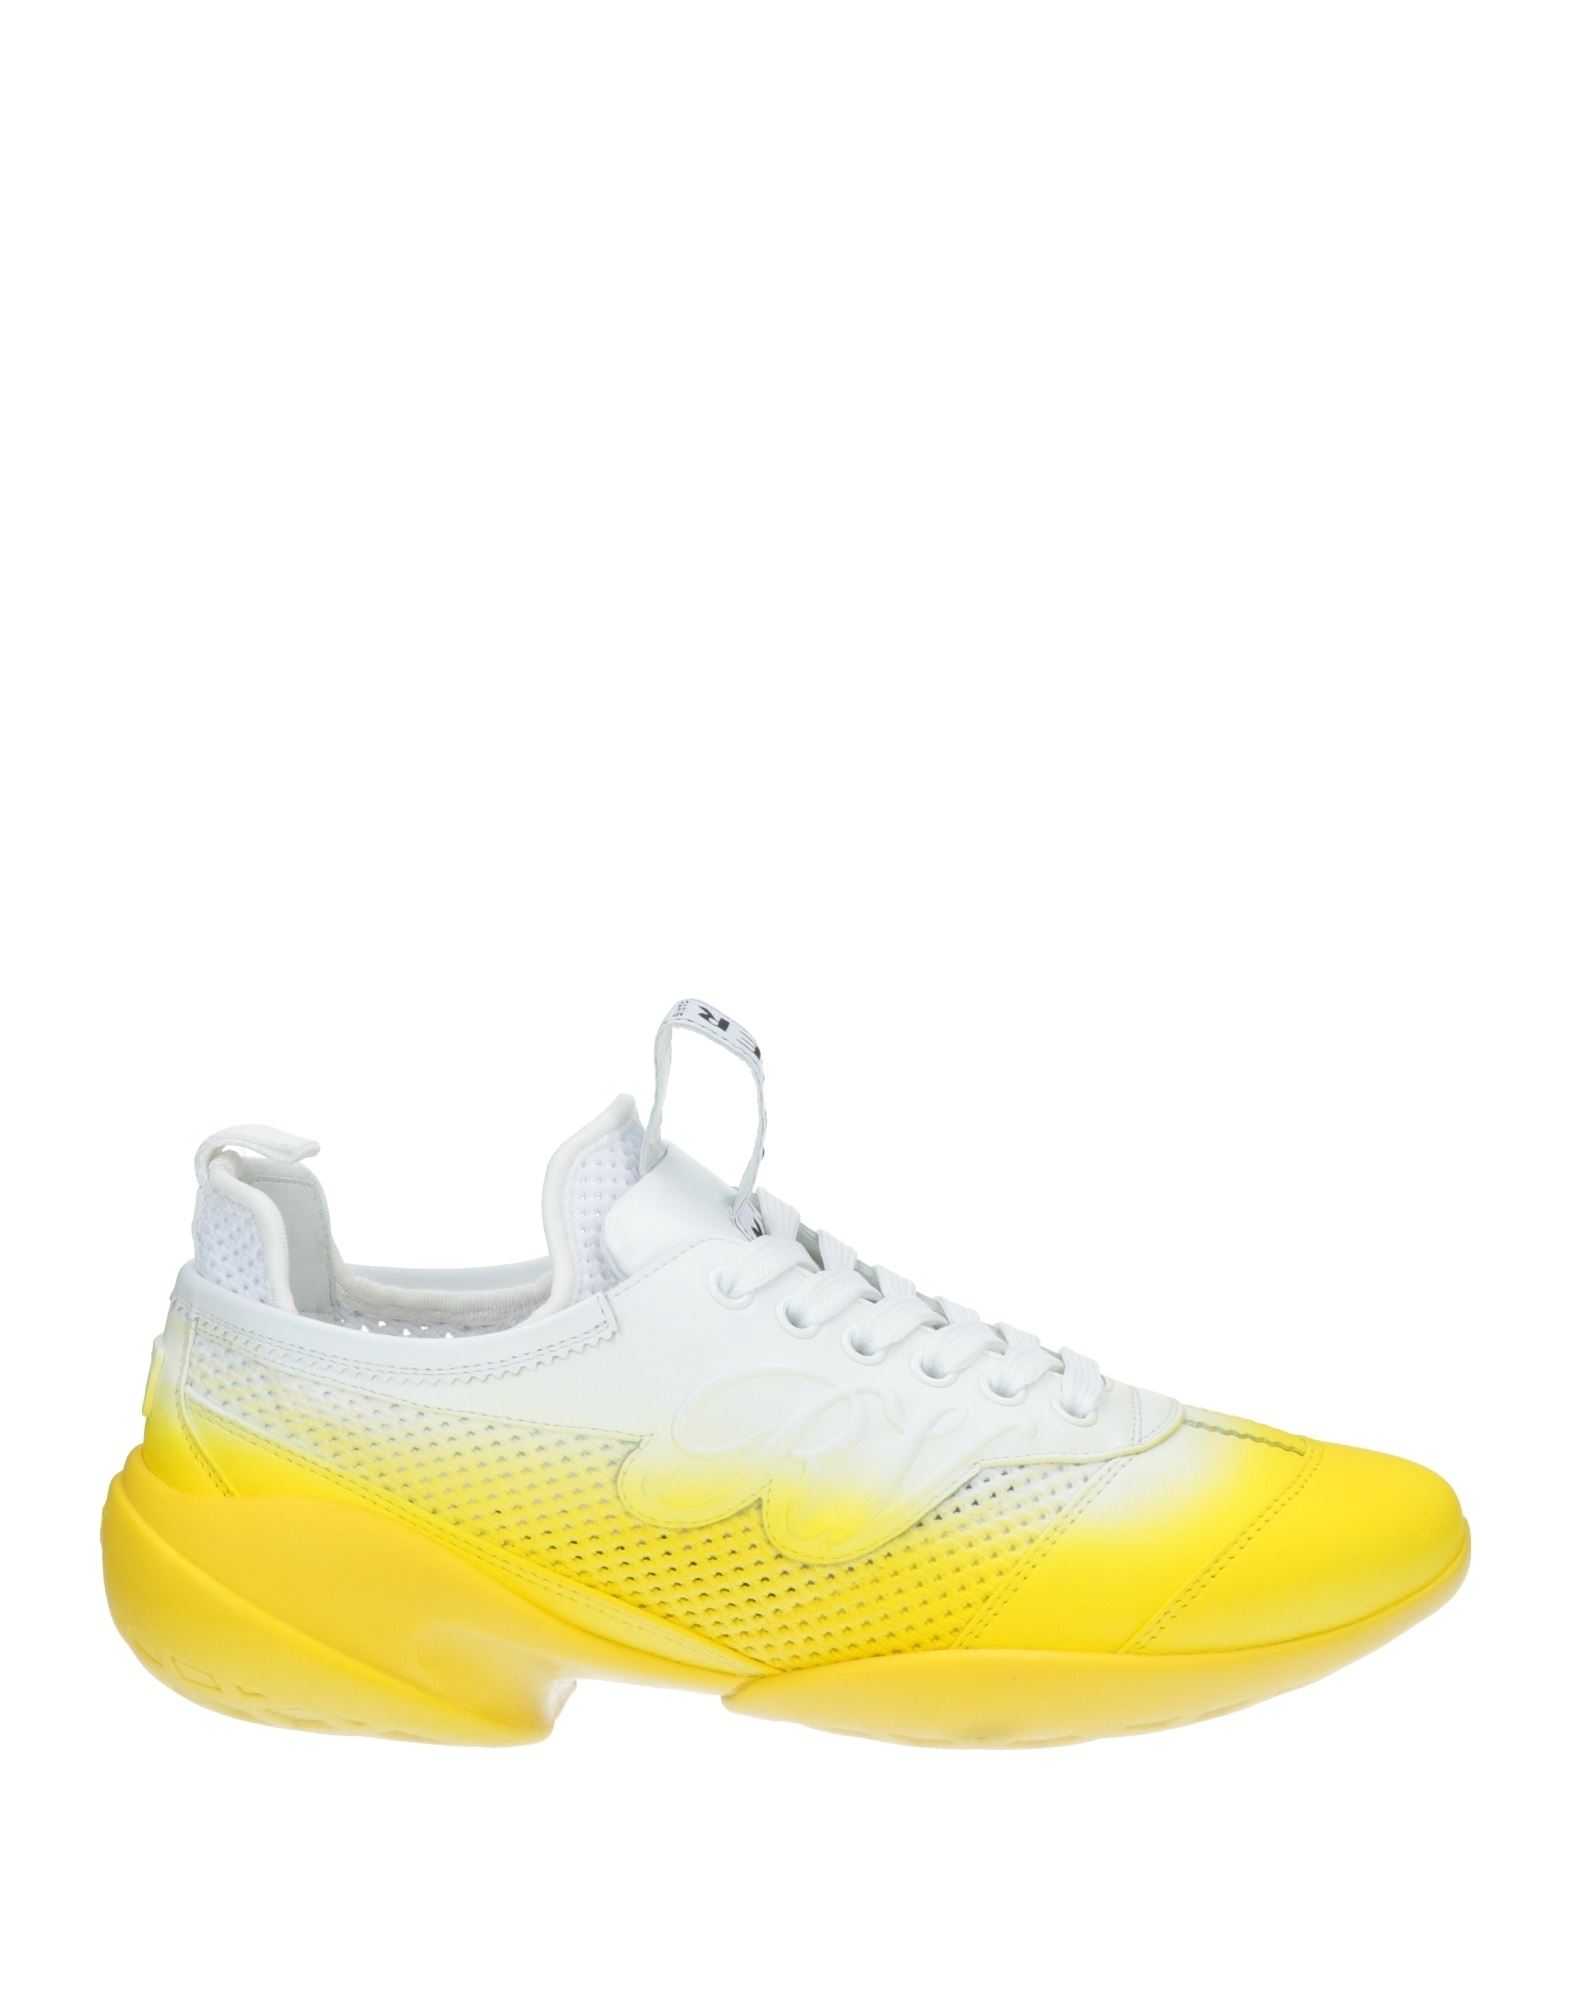 Roger Vivier Sneakers In Yellow